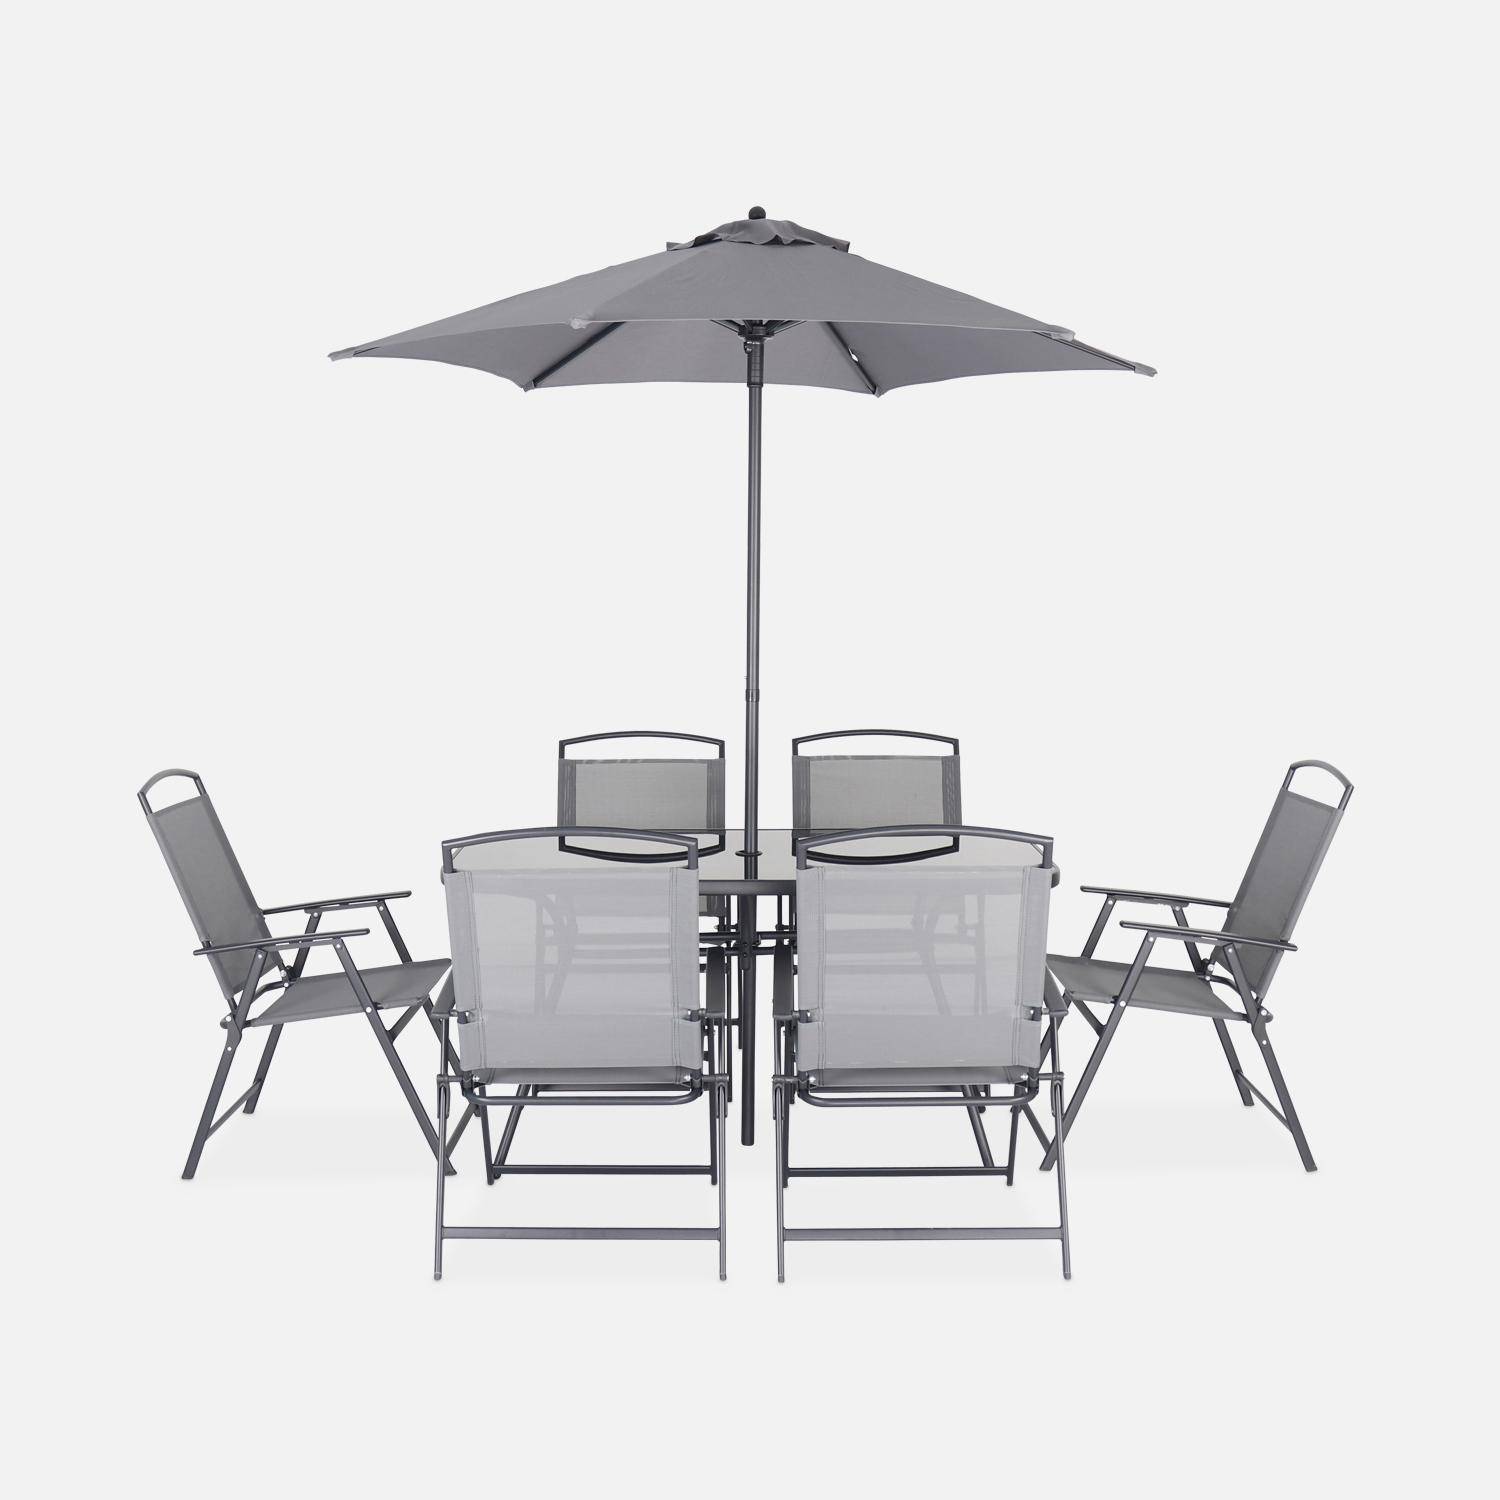 Mesa de jardín 140 x 80 cm 6 sillas con reposabrazos sombrilla